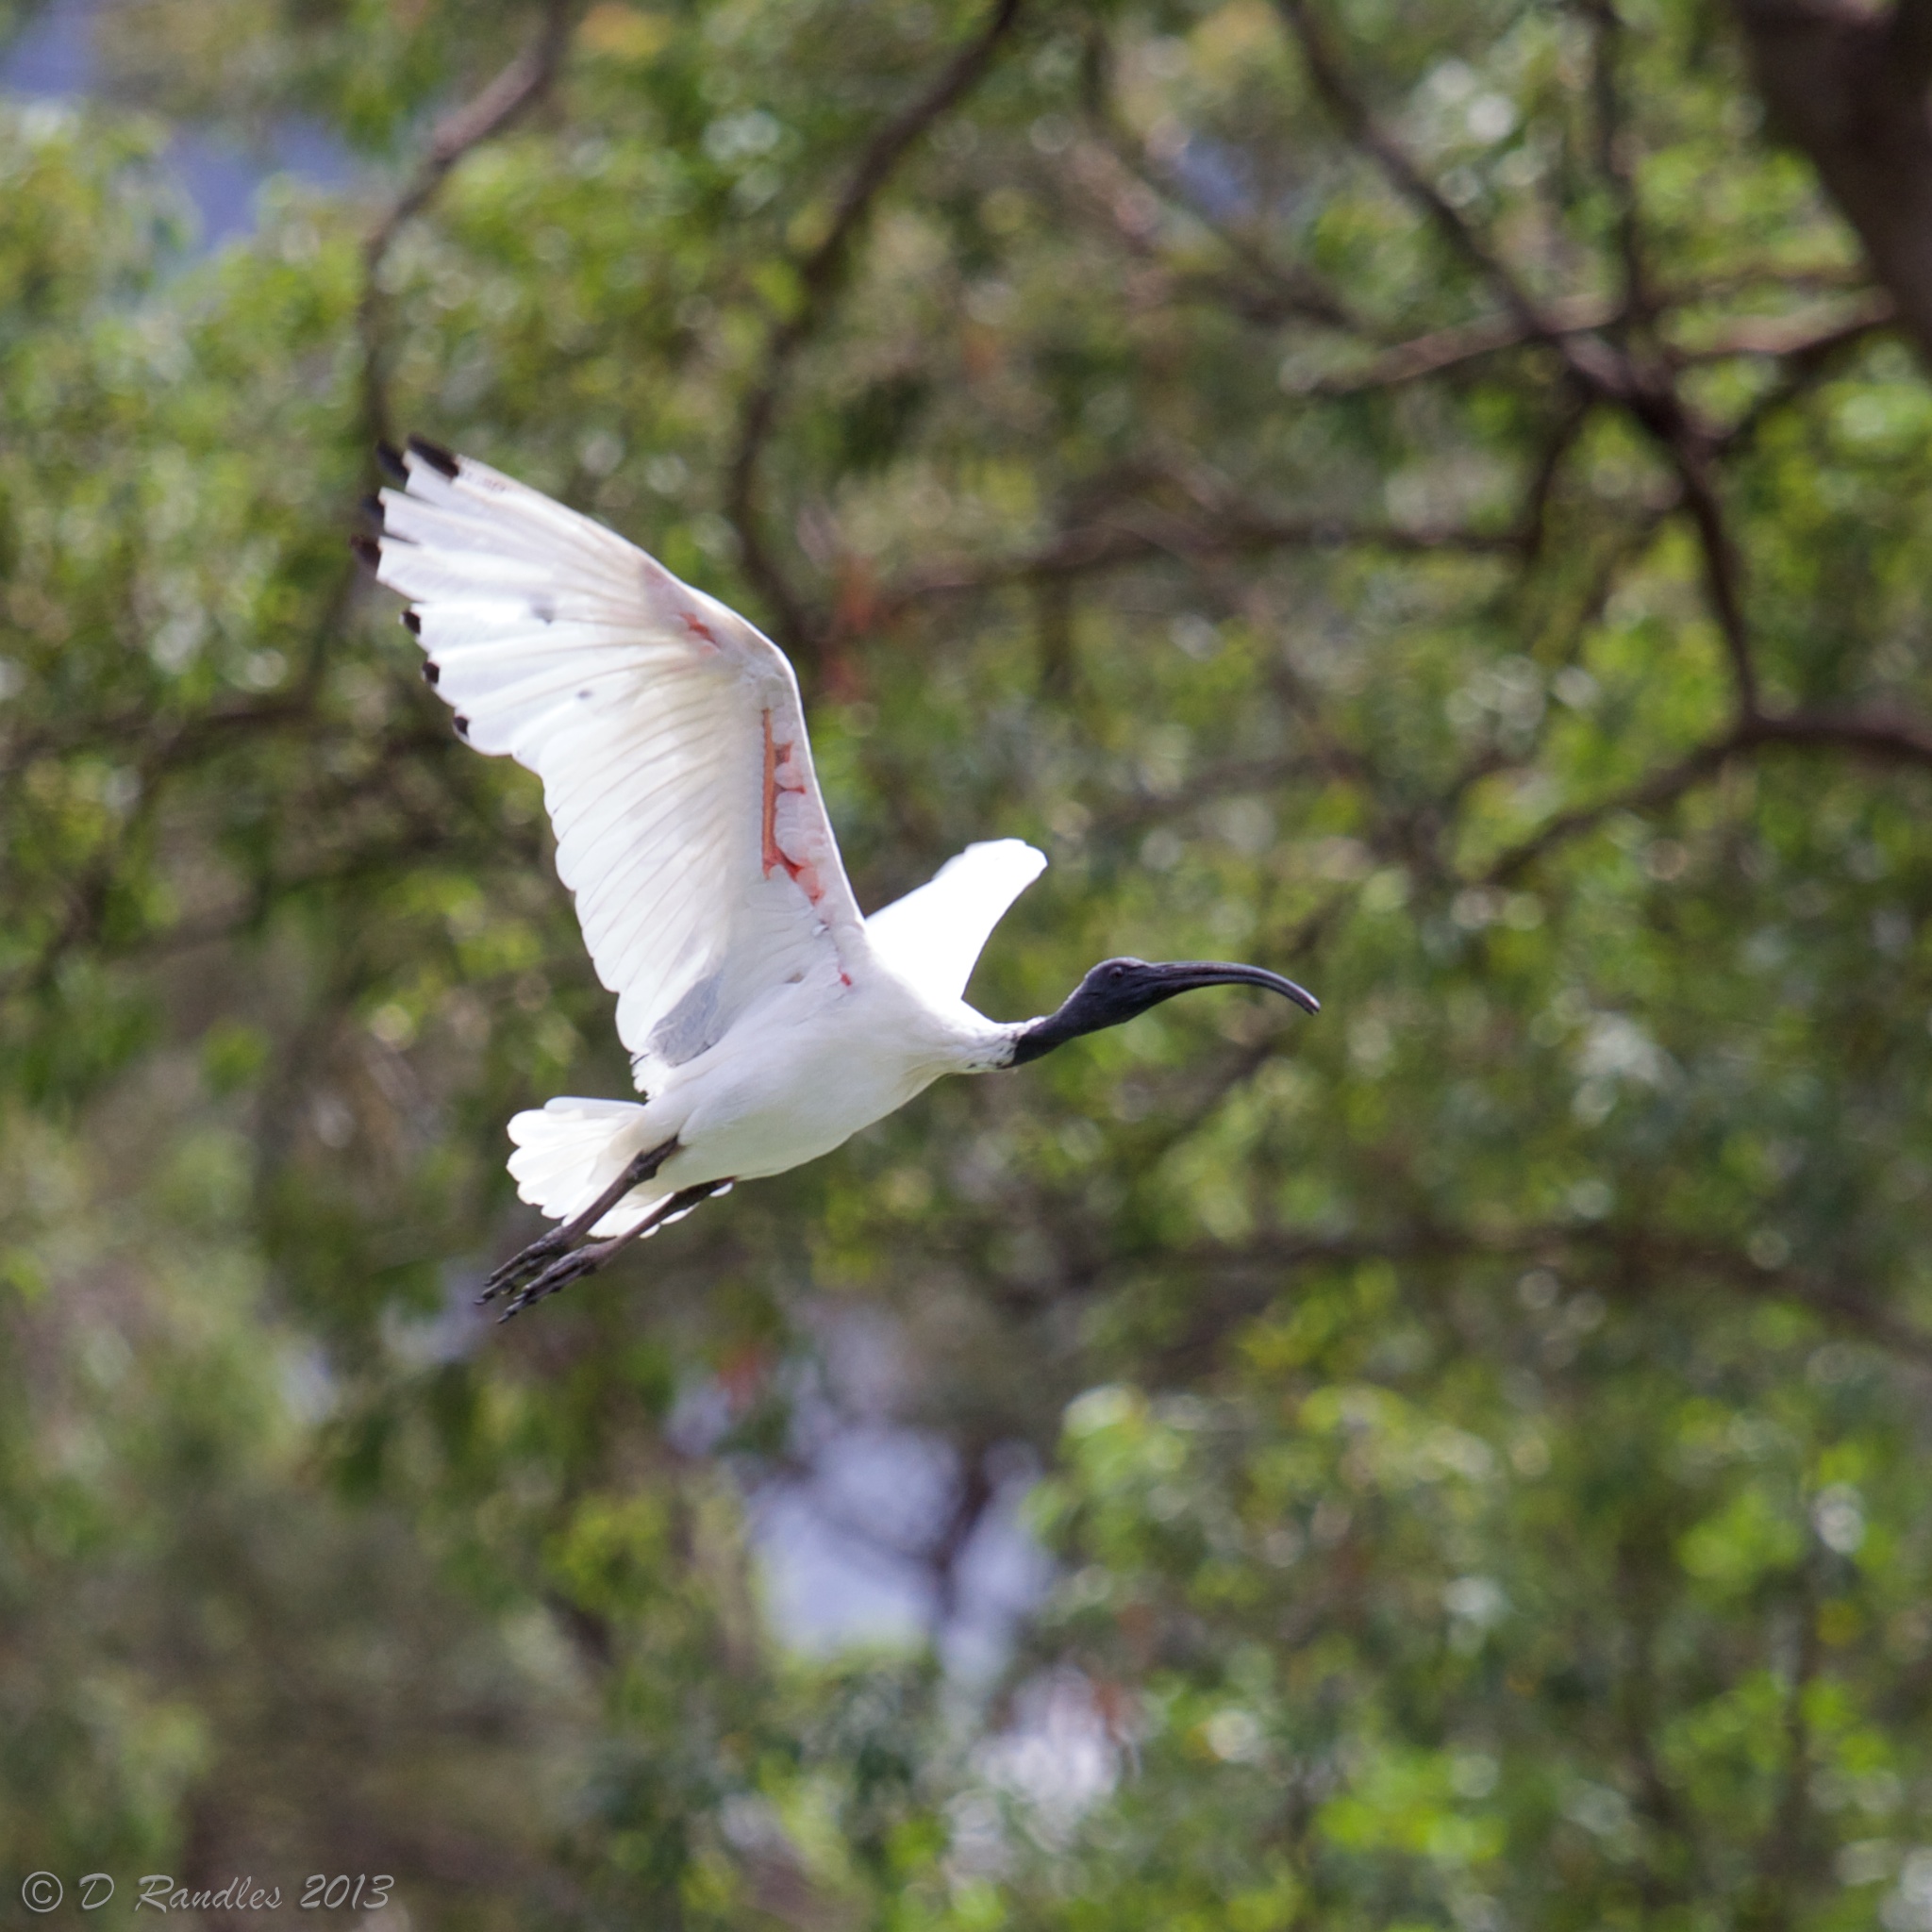 flying ibis